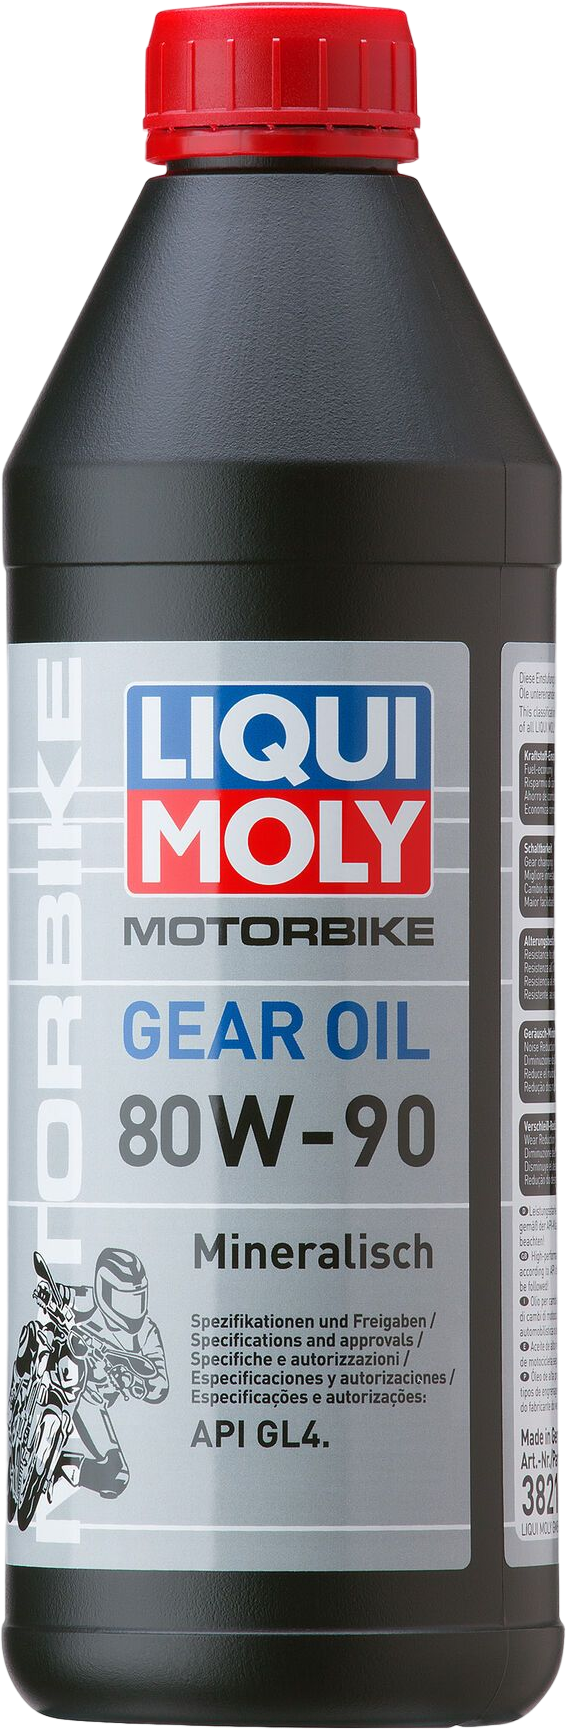 Liqui Moly Motorbike Gear Oil 80W-90, 6 x 1 lt detail 2